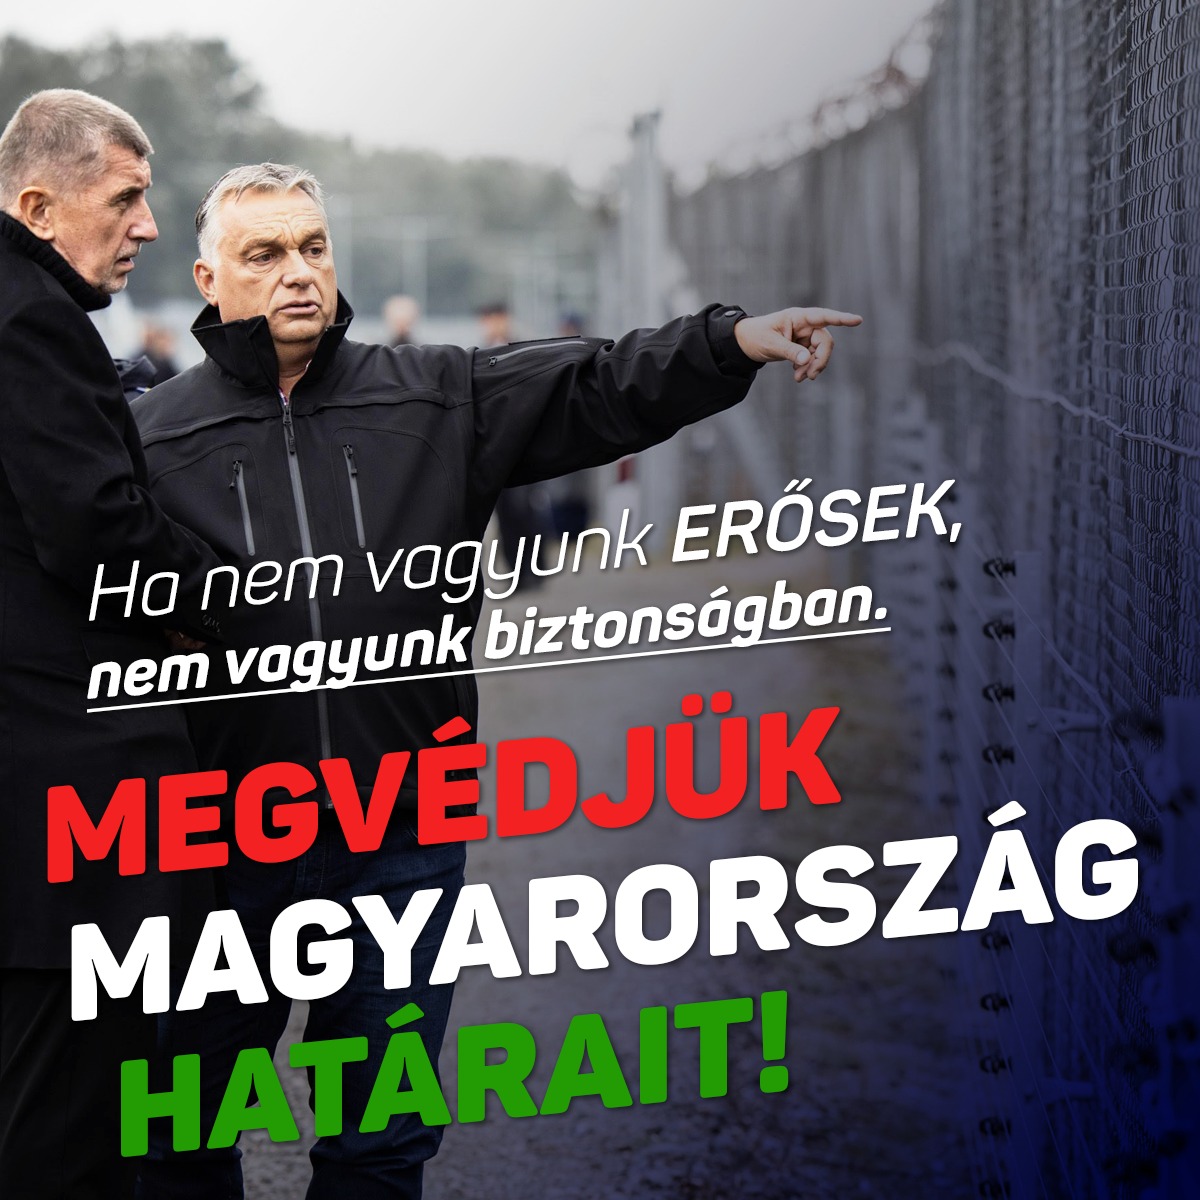 Ha nem vagyunk erősek, nem vagyunk biztonságban. Megvédjük Magyarország határait!